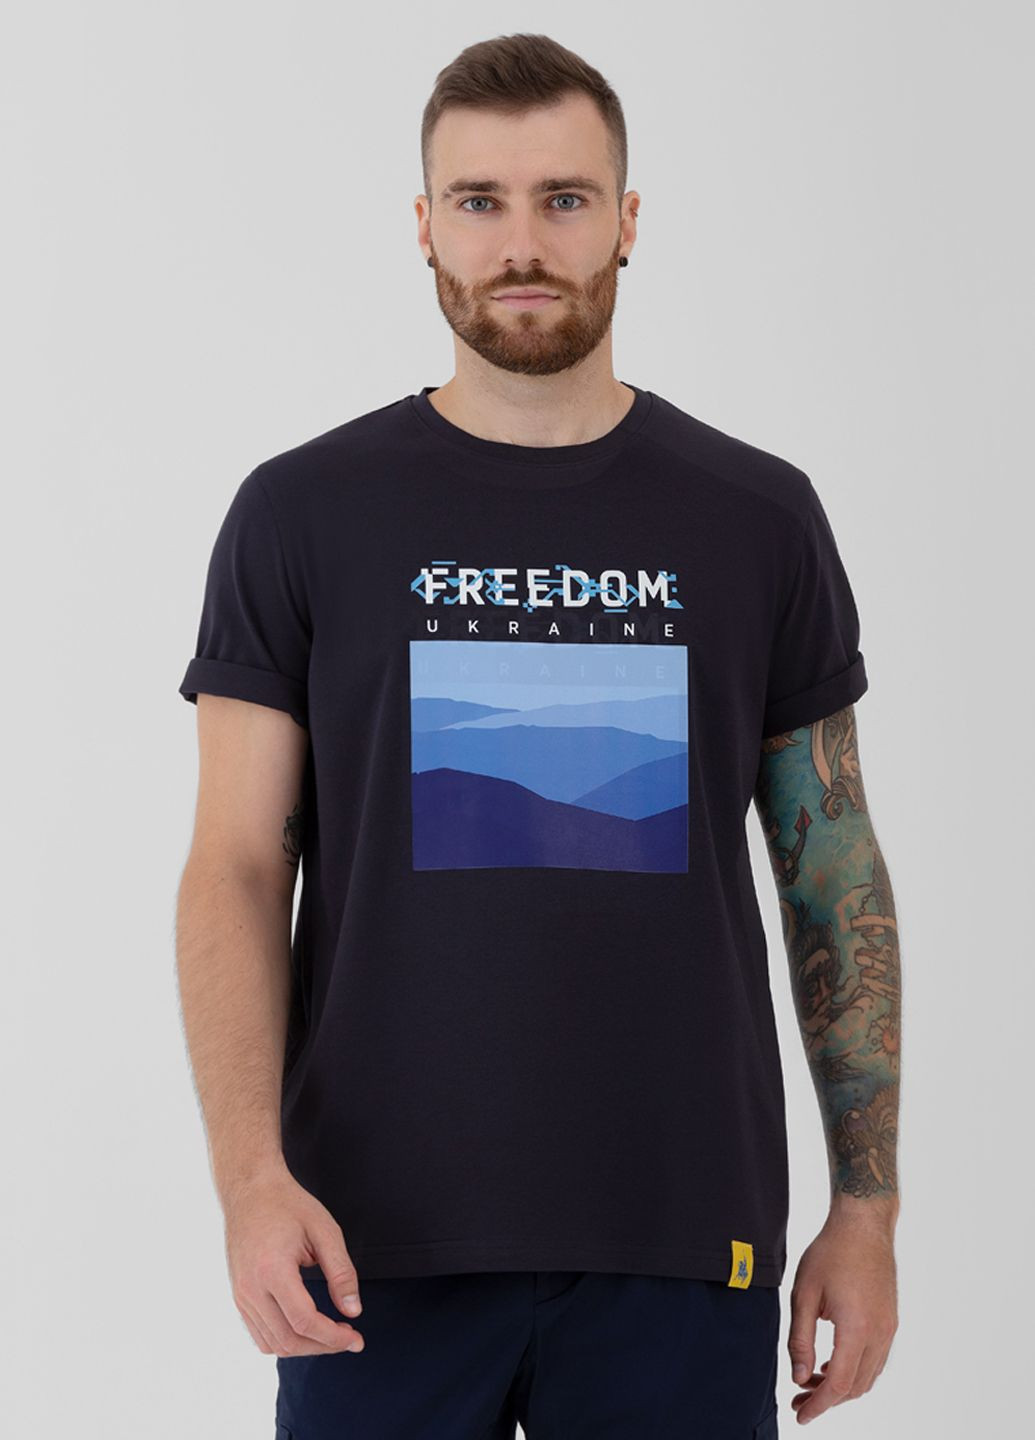 Синяя футболка мужская freedom синяя Arber T-SHIRT FF19